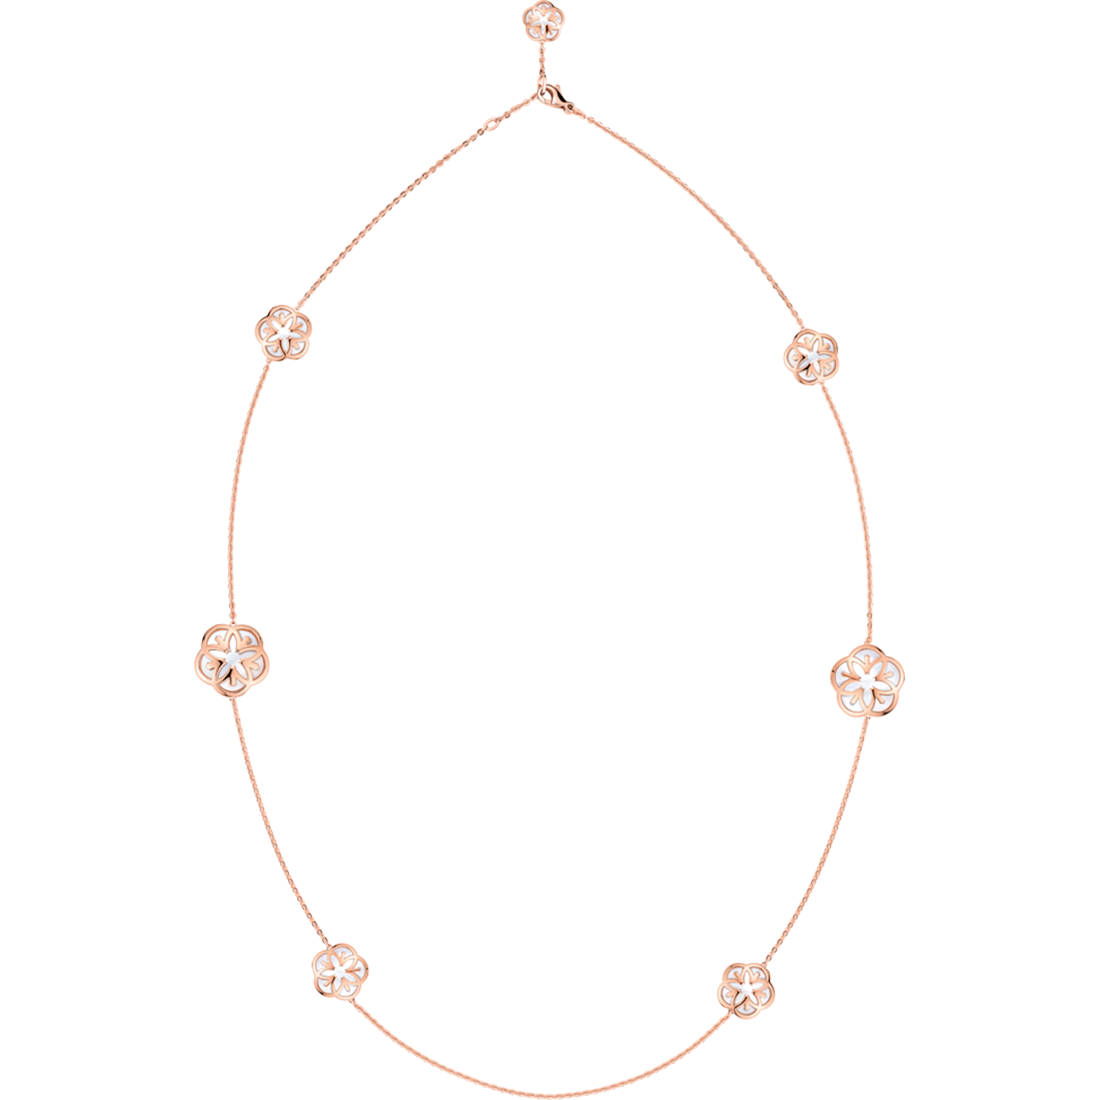 Omega Flower Colar, Ouro rosa de 18K, Cabochon de madrepérola - N603BG0700105